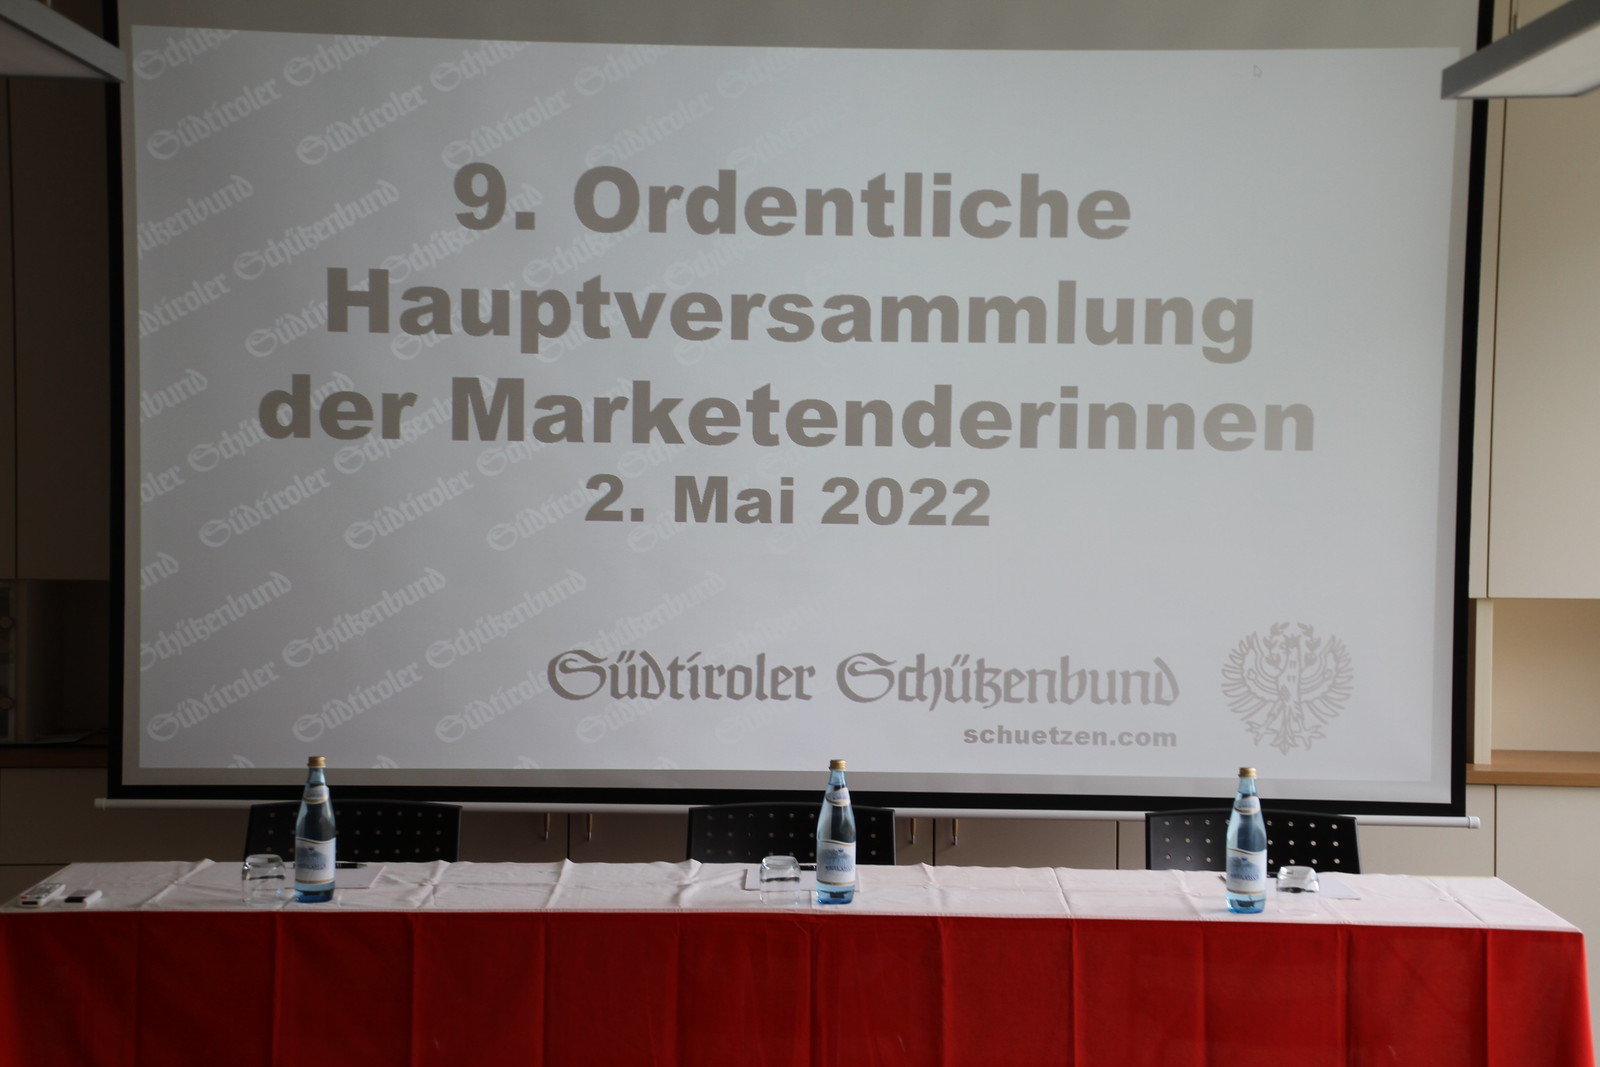 9. Hauptversammlung der Marketenderinnen in Bozen, 02.05.2022